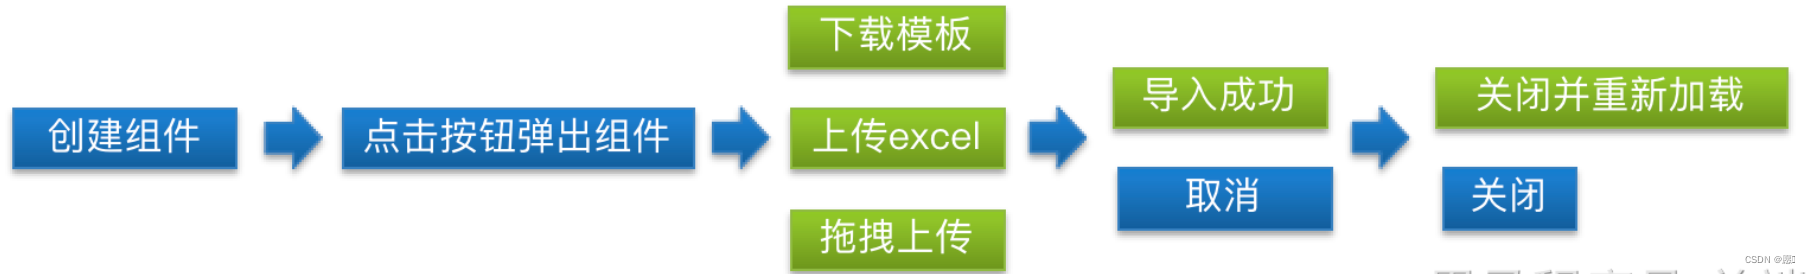 Excel导入组件的封装以及使用页面点击弹出该弹框